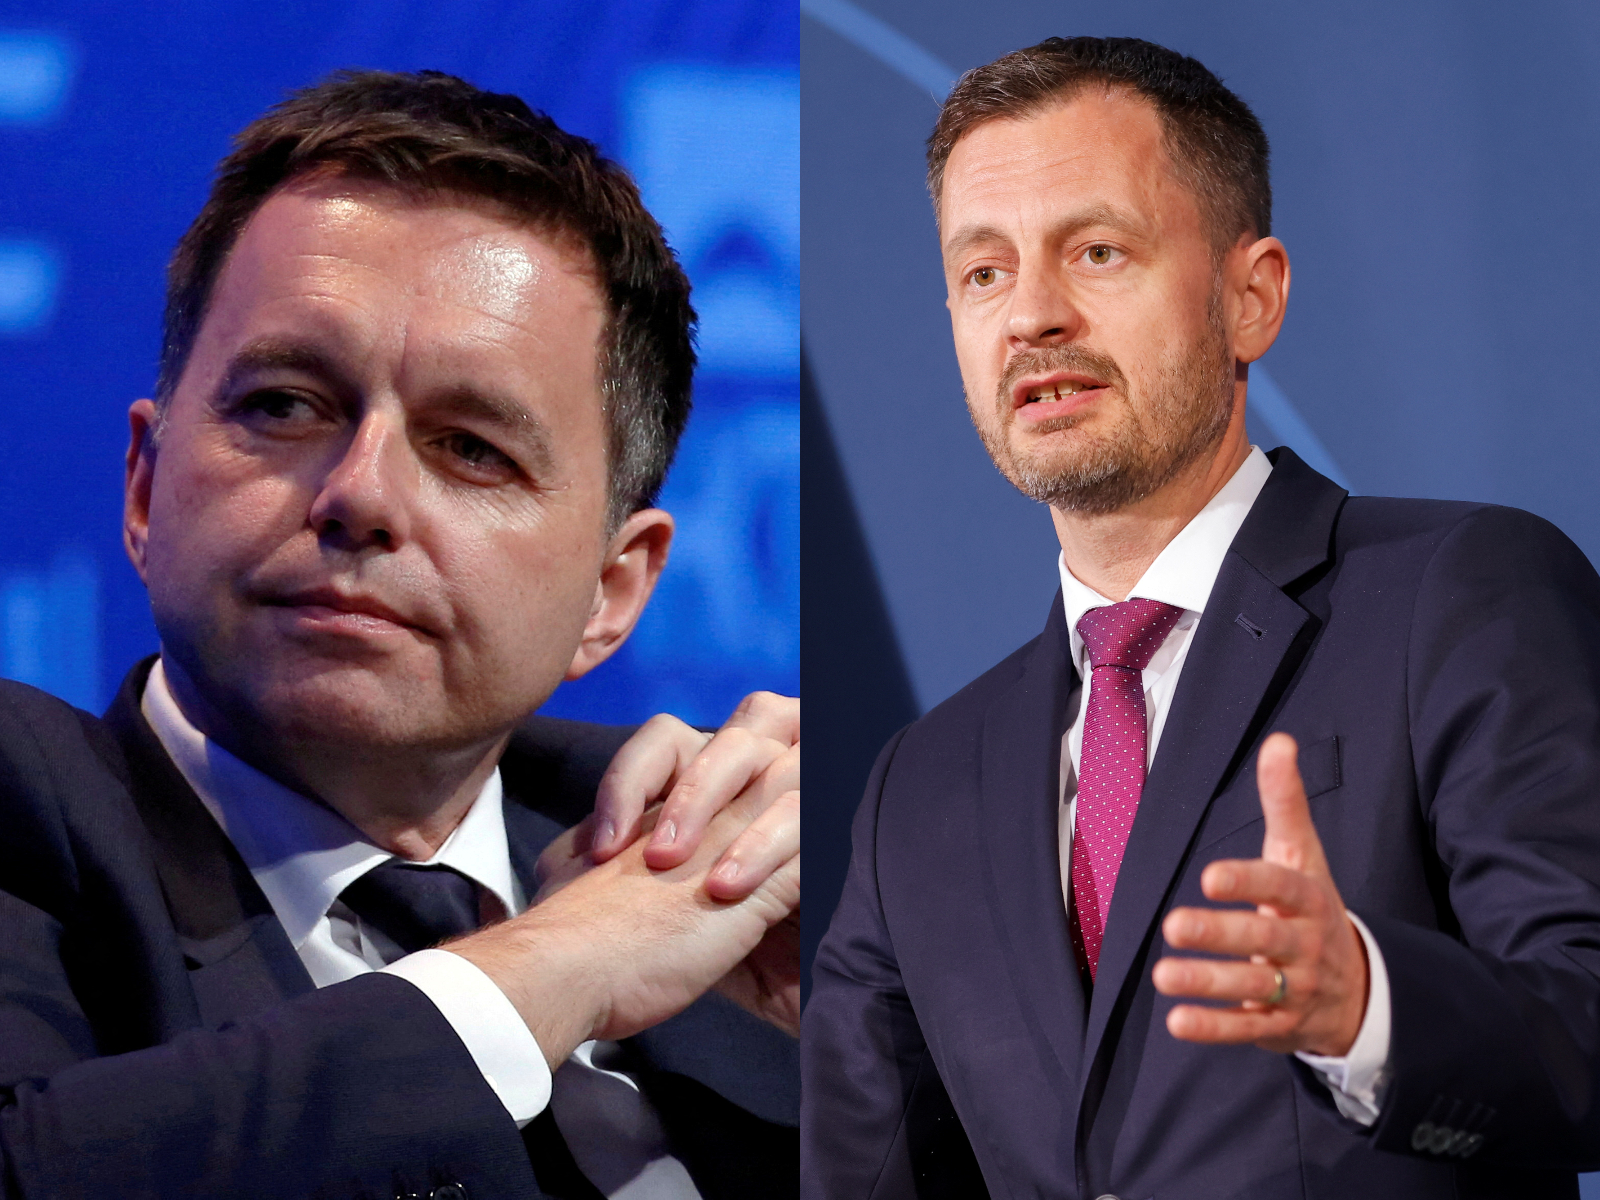 Κρίση στην Σλοβακία: Την παραίτηση του κεντρικού τραπεζίτη ζητά ο πρωθυπουργός